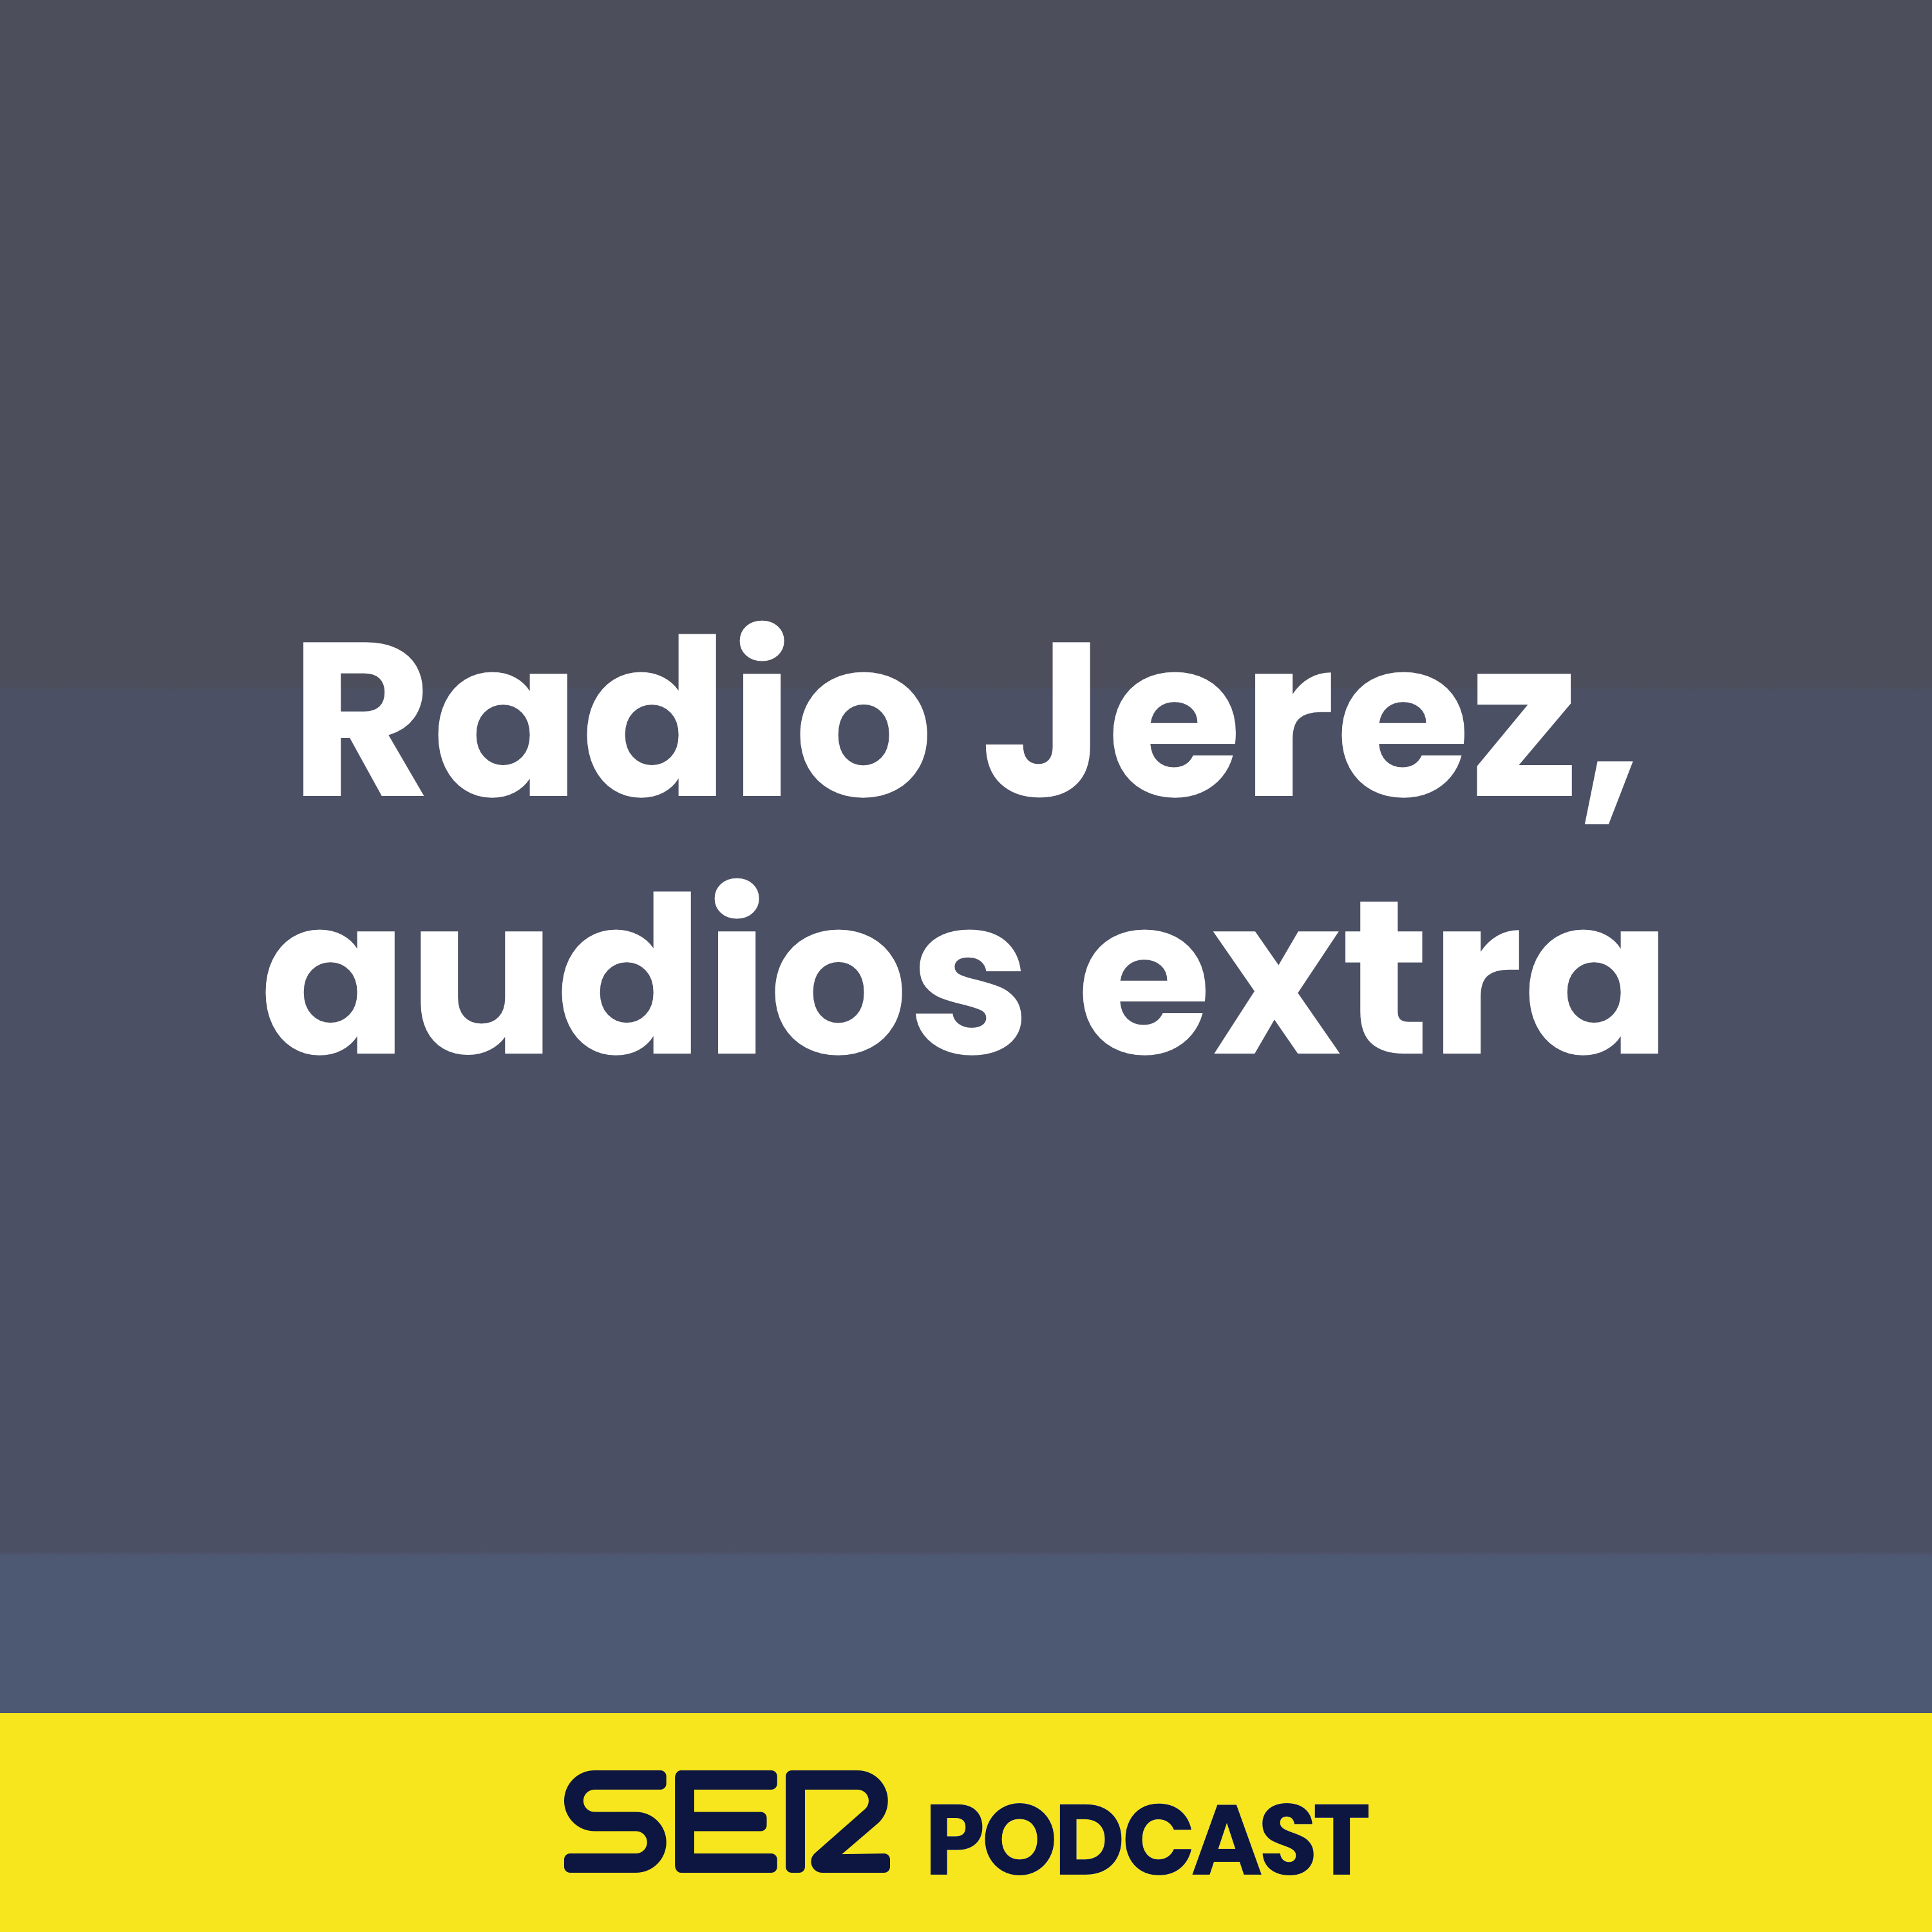 Radio Jerez, audios extra